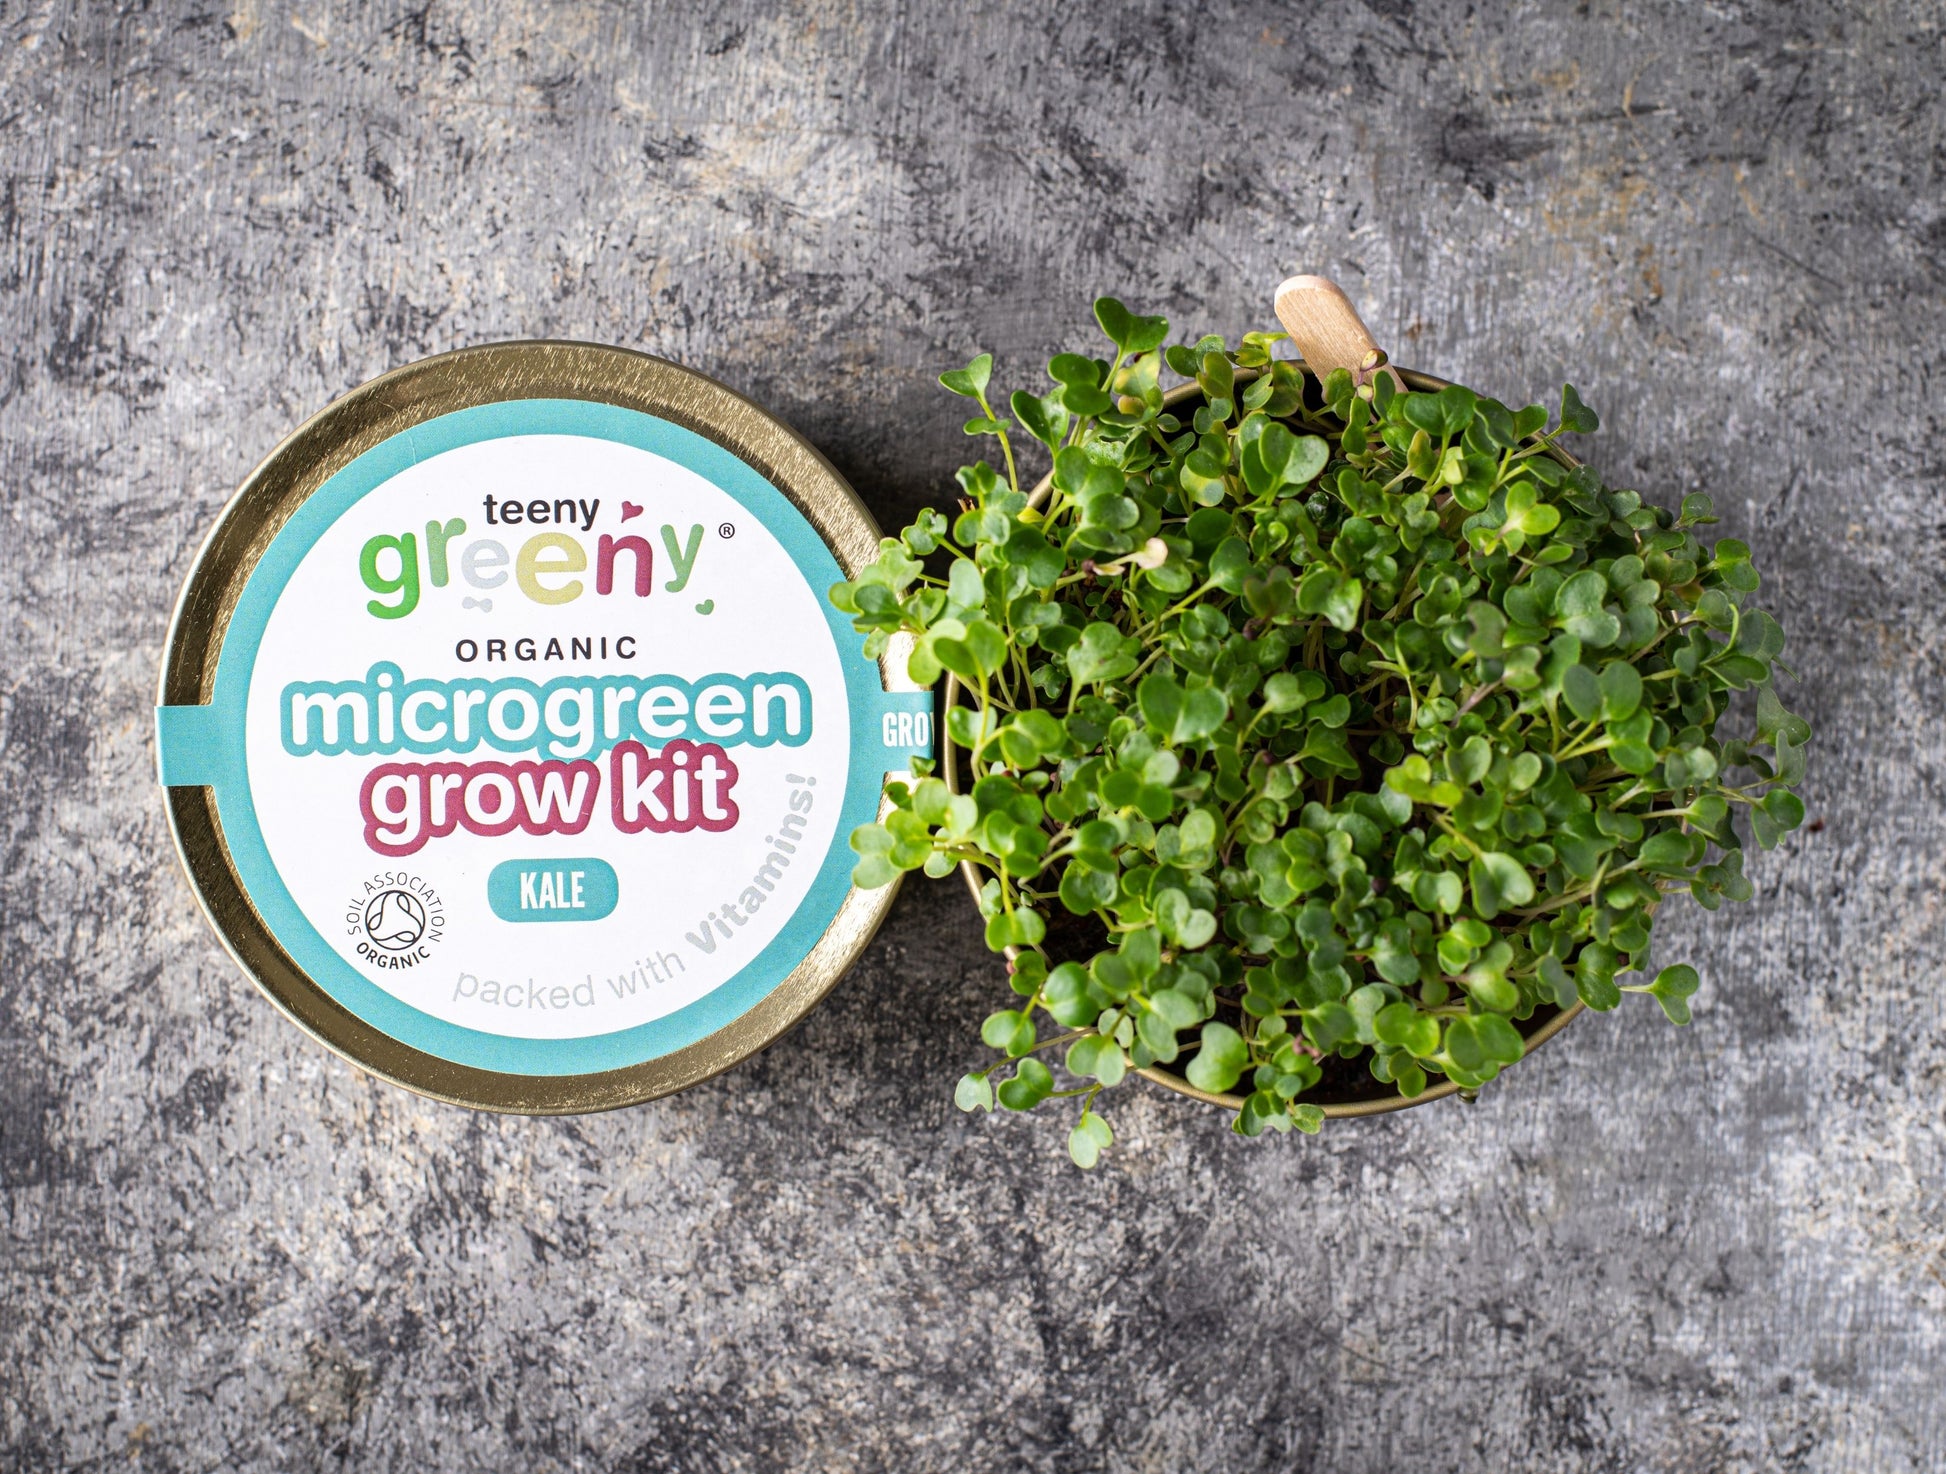 Grow Microgreens for energy